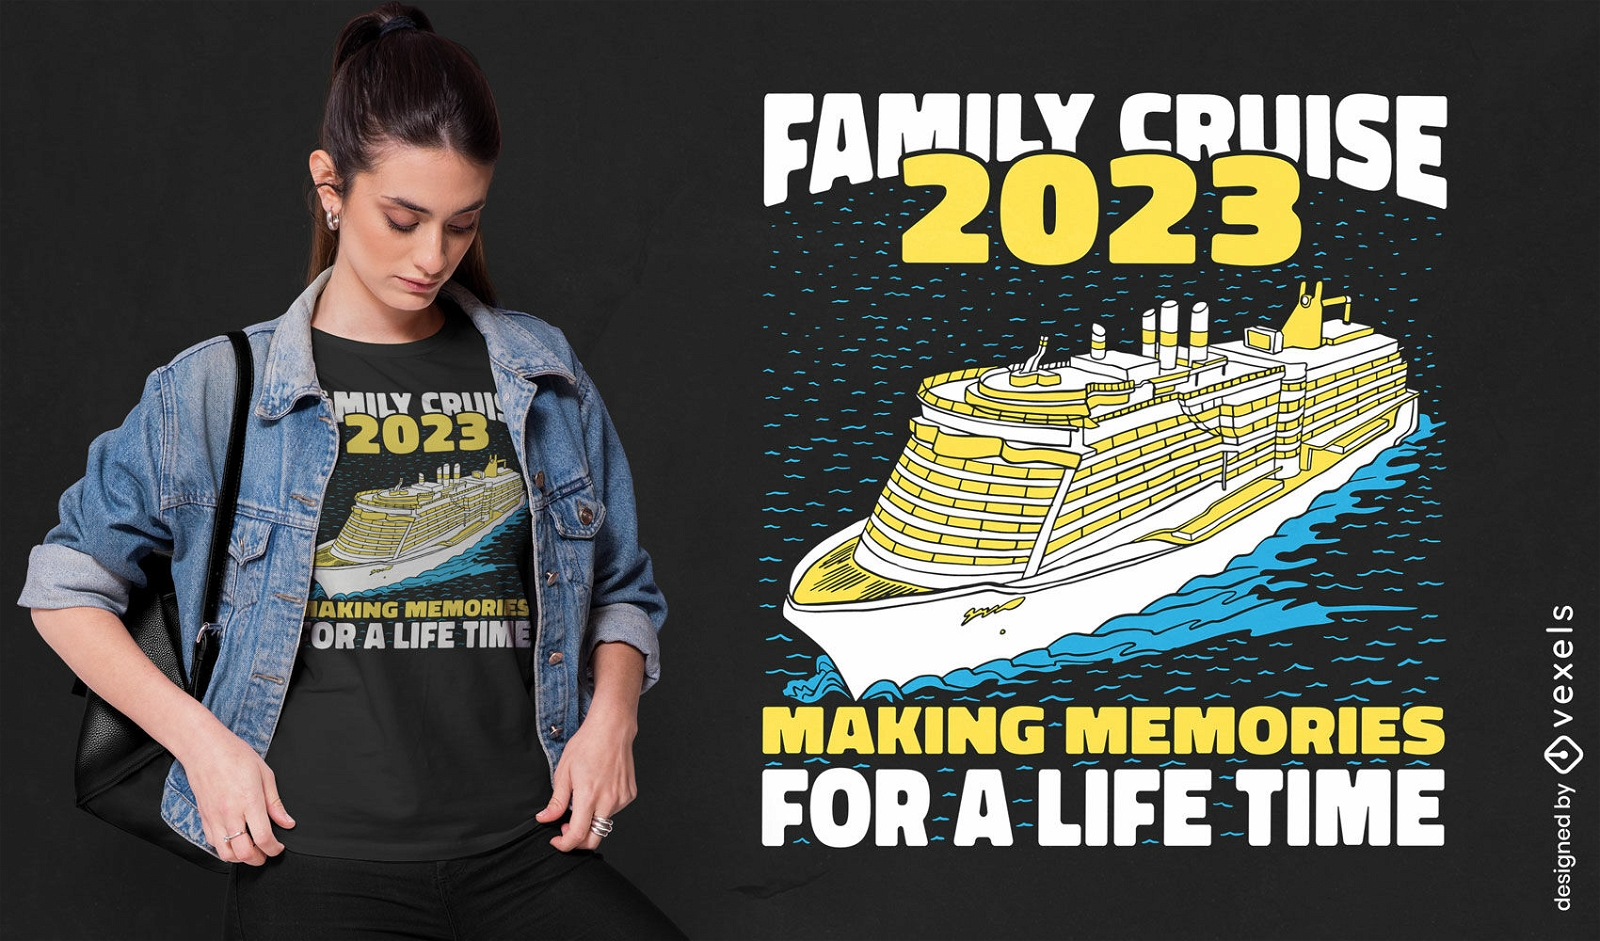 Dise?o de camiseta de viaje de crucero familiar.